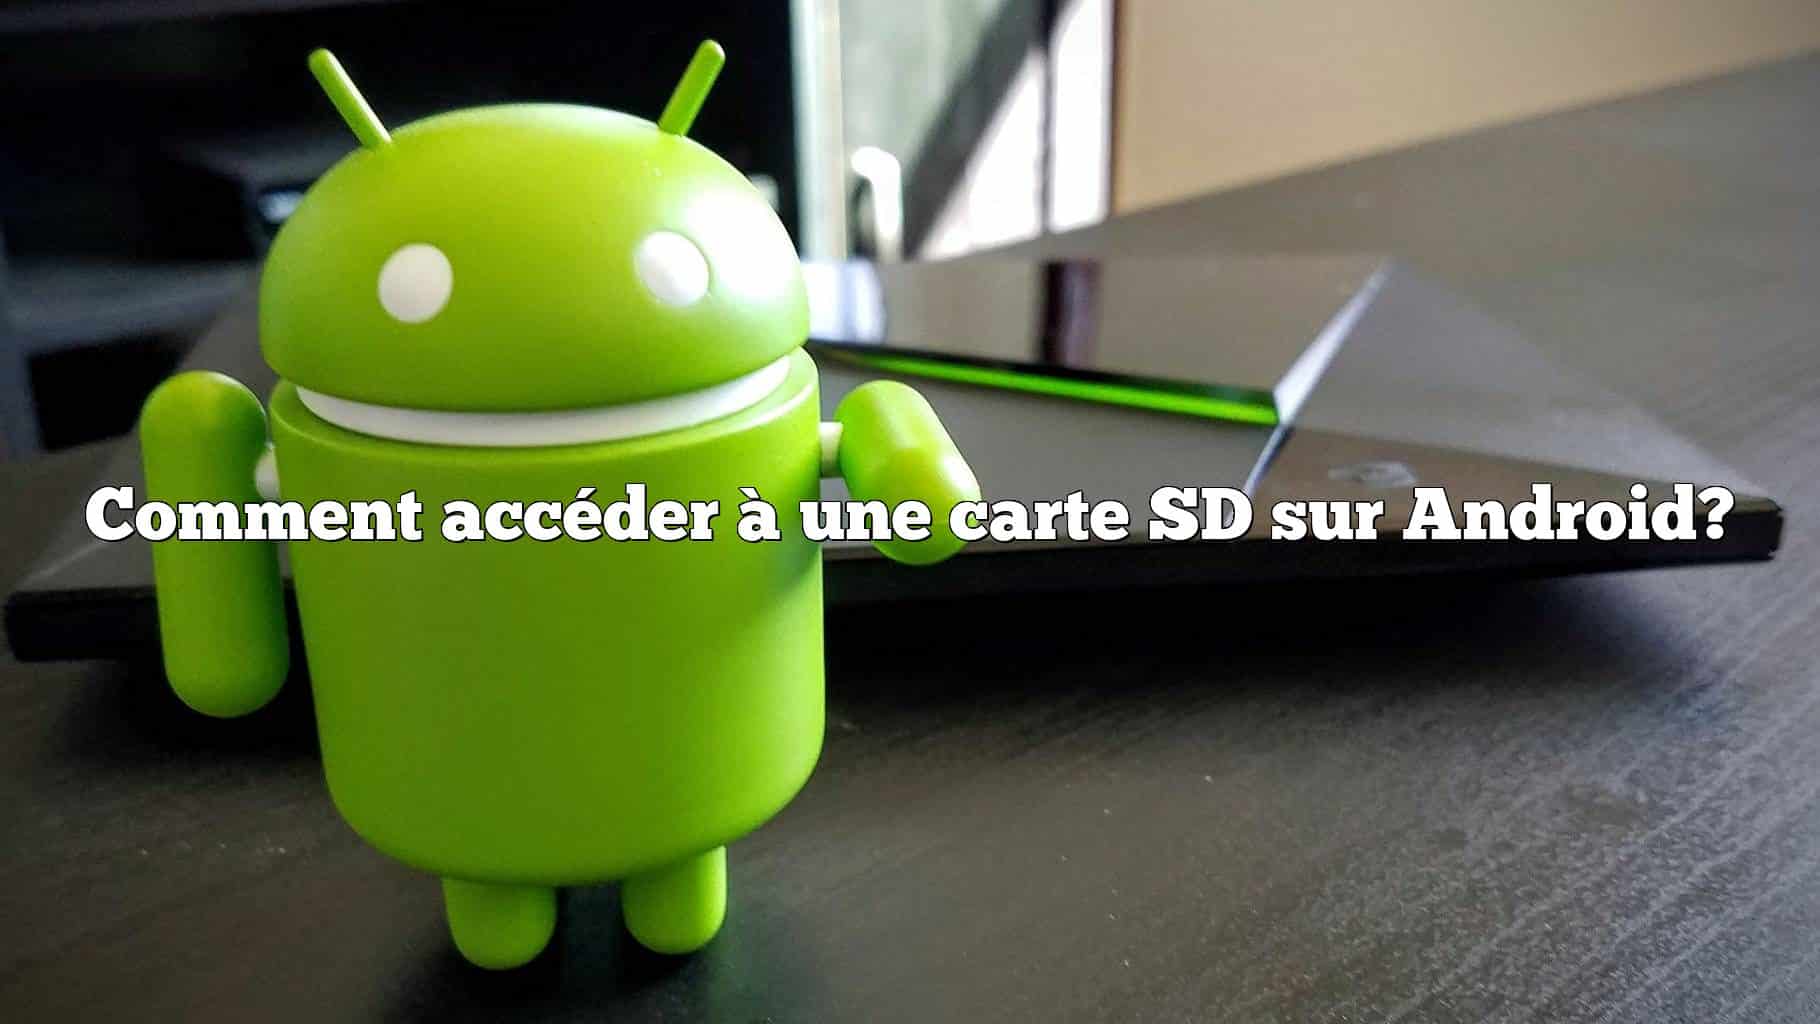 Comment accéder à une carte SD sur Android?